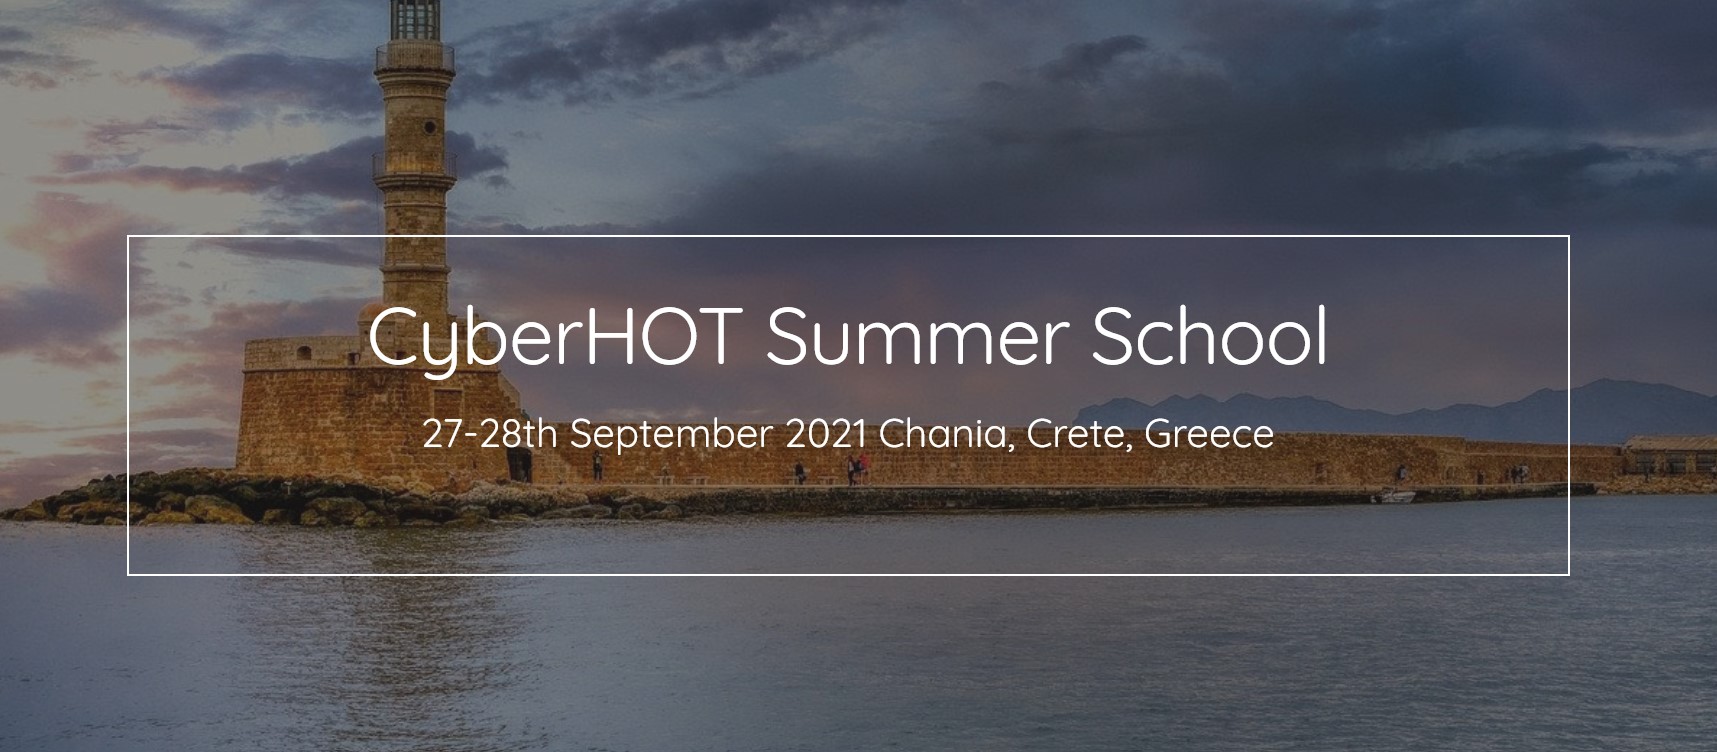 CyberHot Summer School sponsored by CYRENE